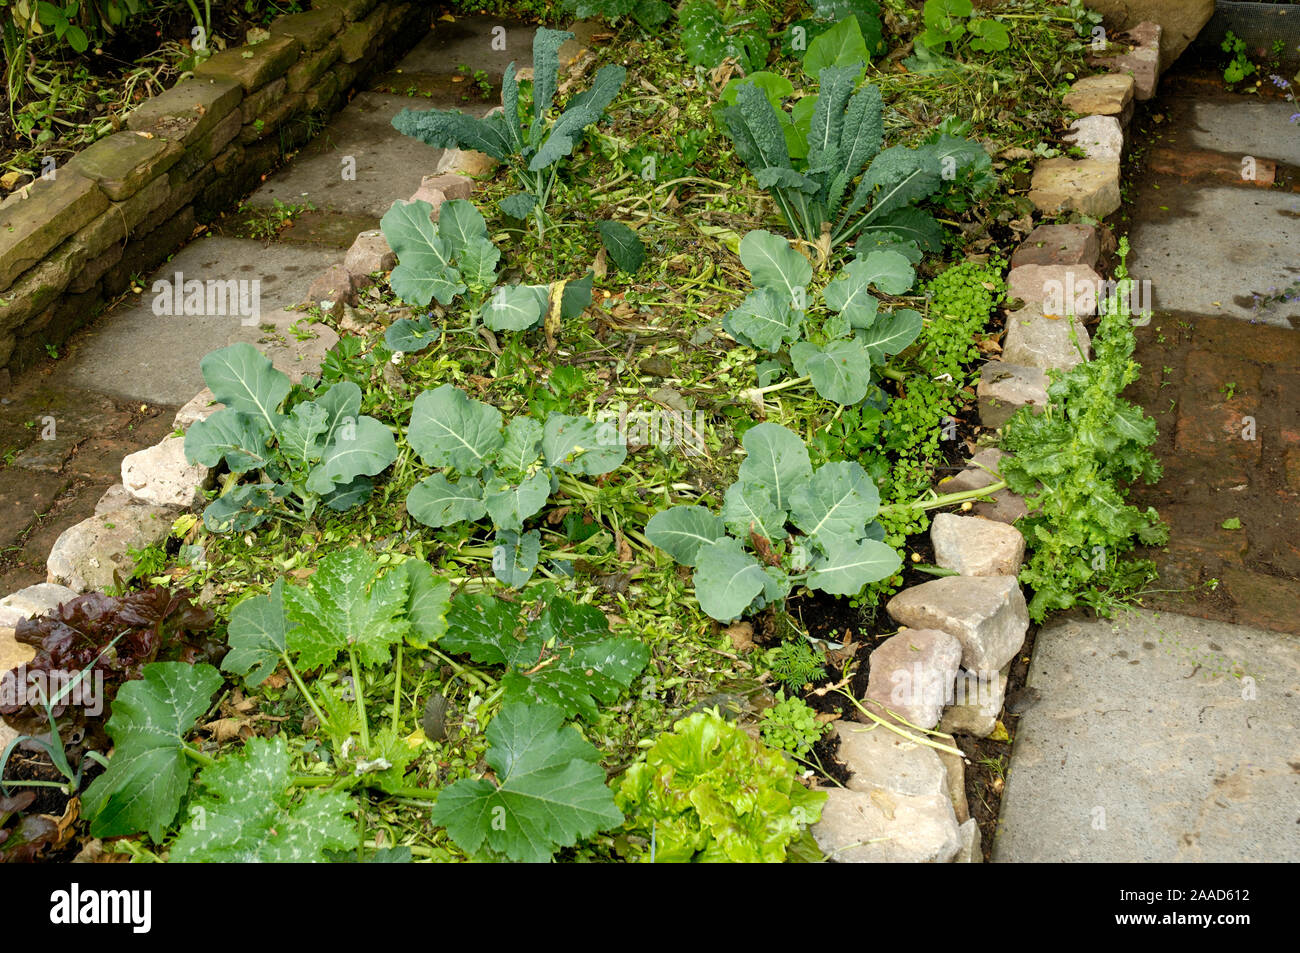 Bed of vegetables mulch | Gemuesebeet mit Salat und Kohl, gemulcht  / Stock Photo